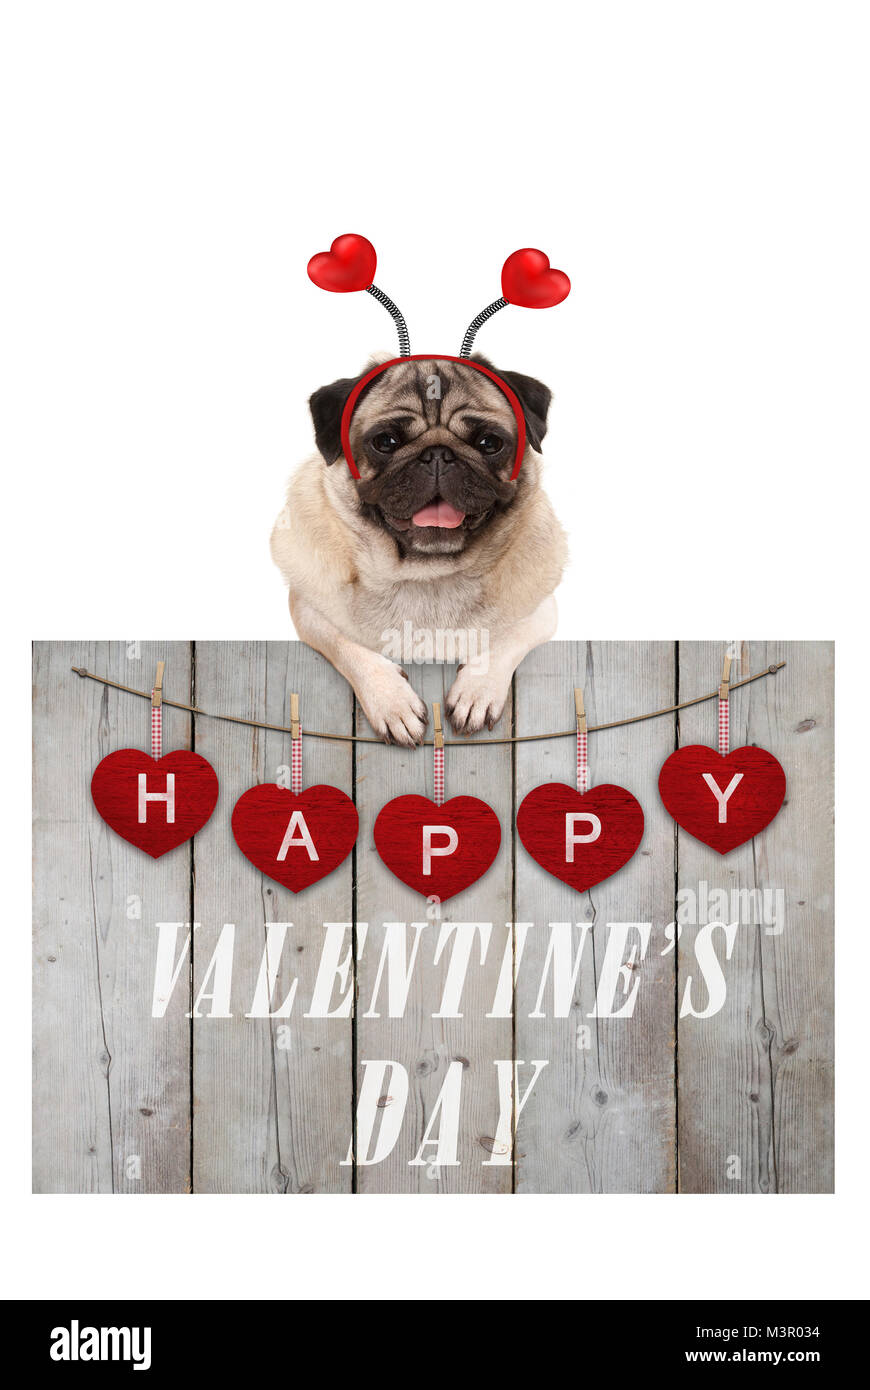 Carino pug cucciolo di cane appoggiata sulla staccionata in legno di usate impalcature in legno rosso con cuori e testo felice il giorno di san valentino, isolato su sfondo bianco Foto Stock